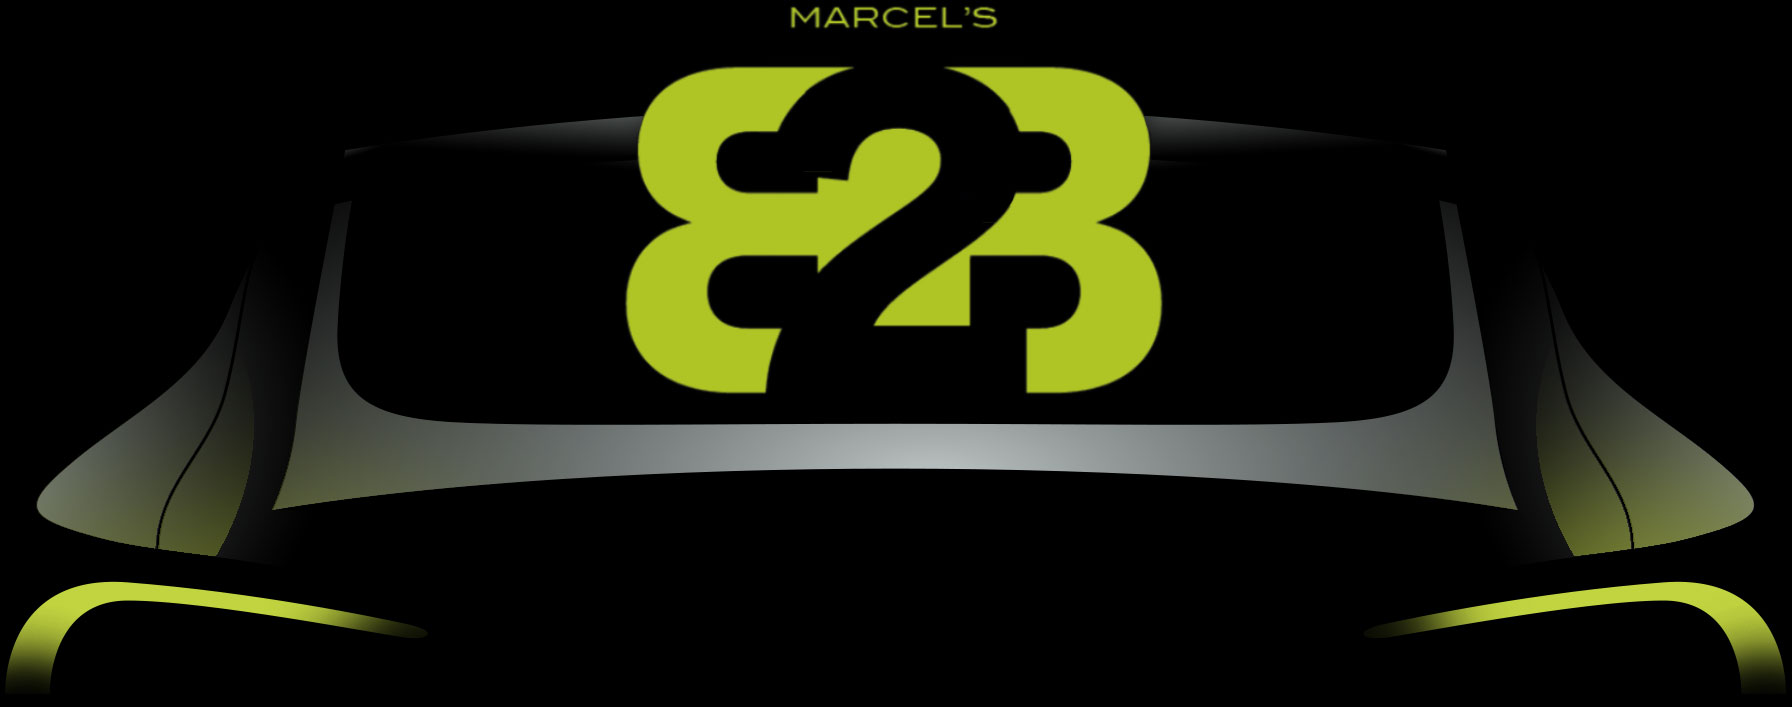 Marcel's B2B / Auto Paint & Collision